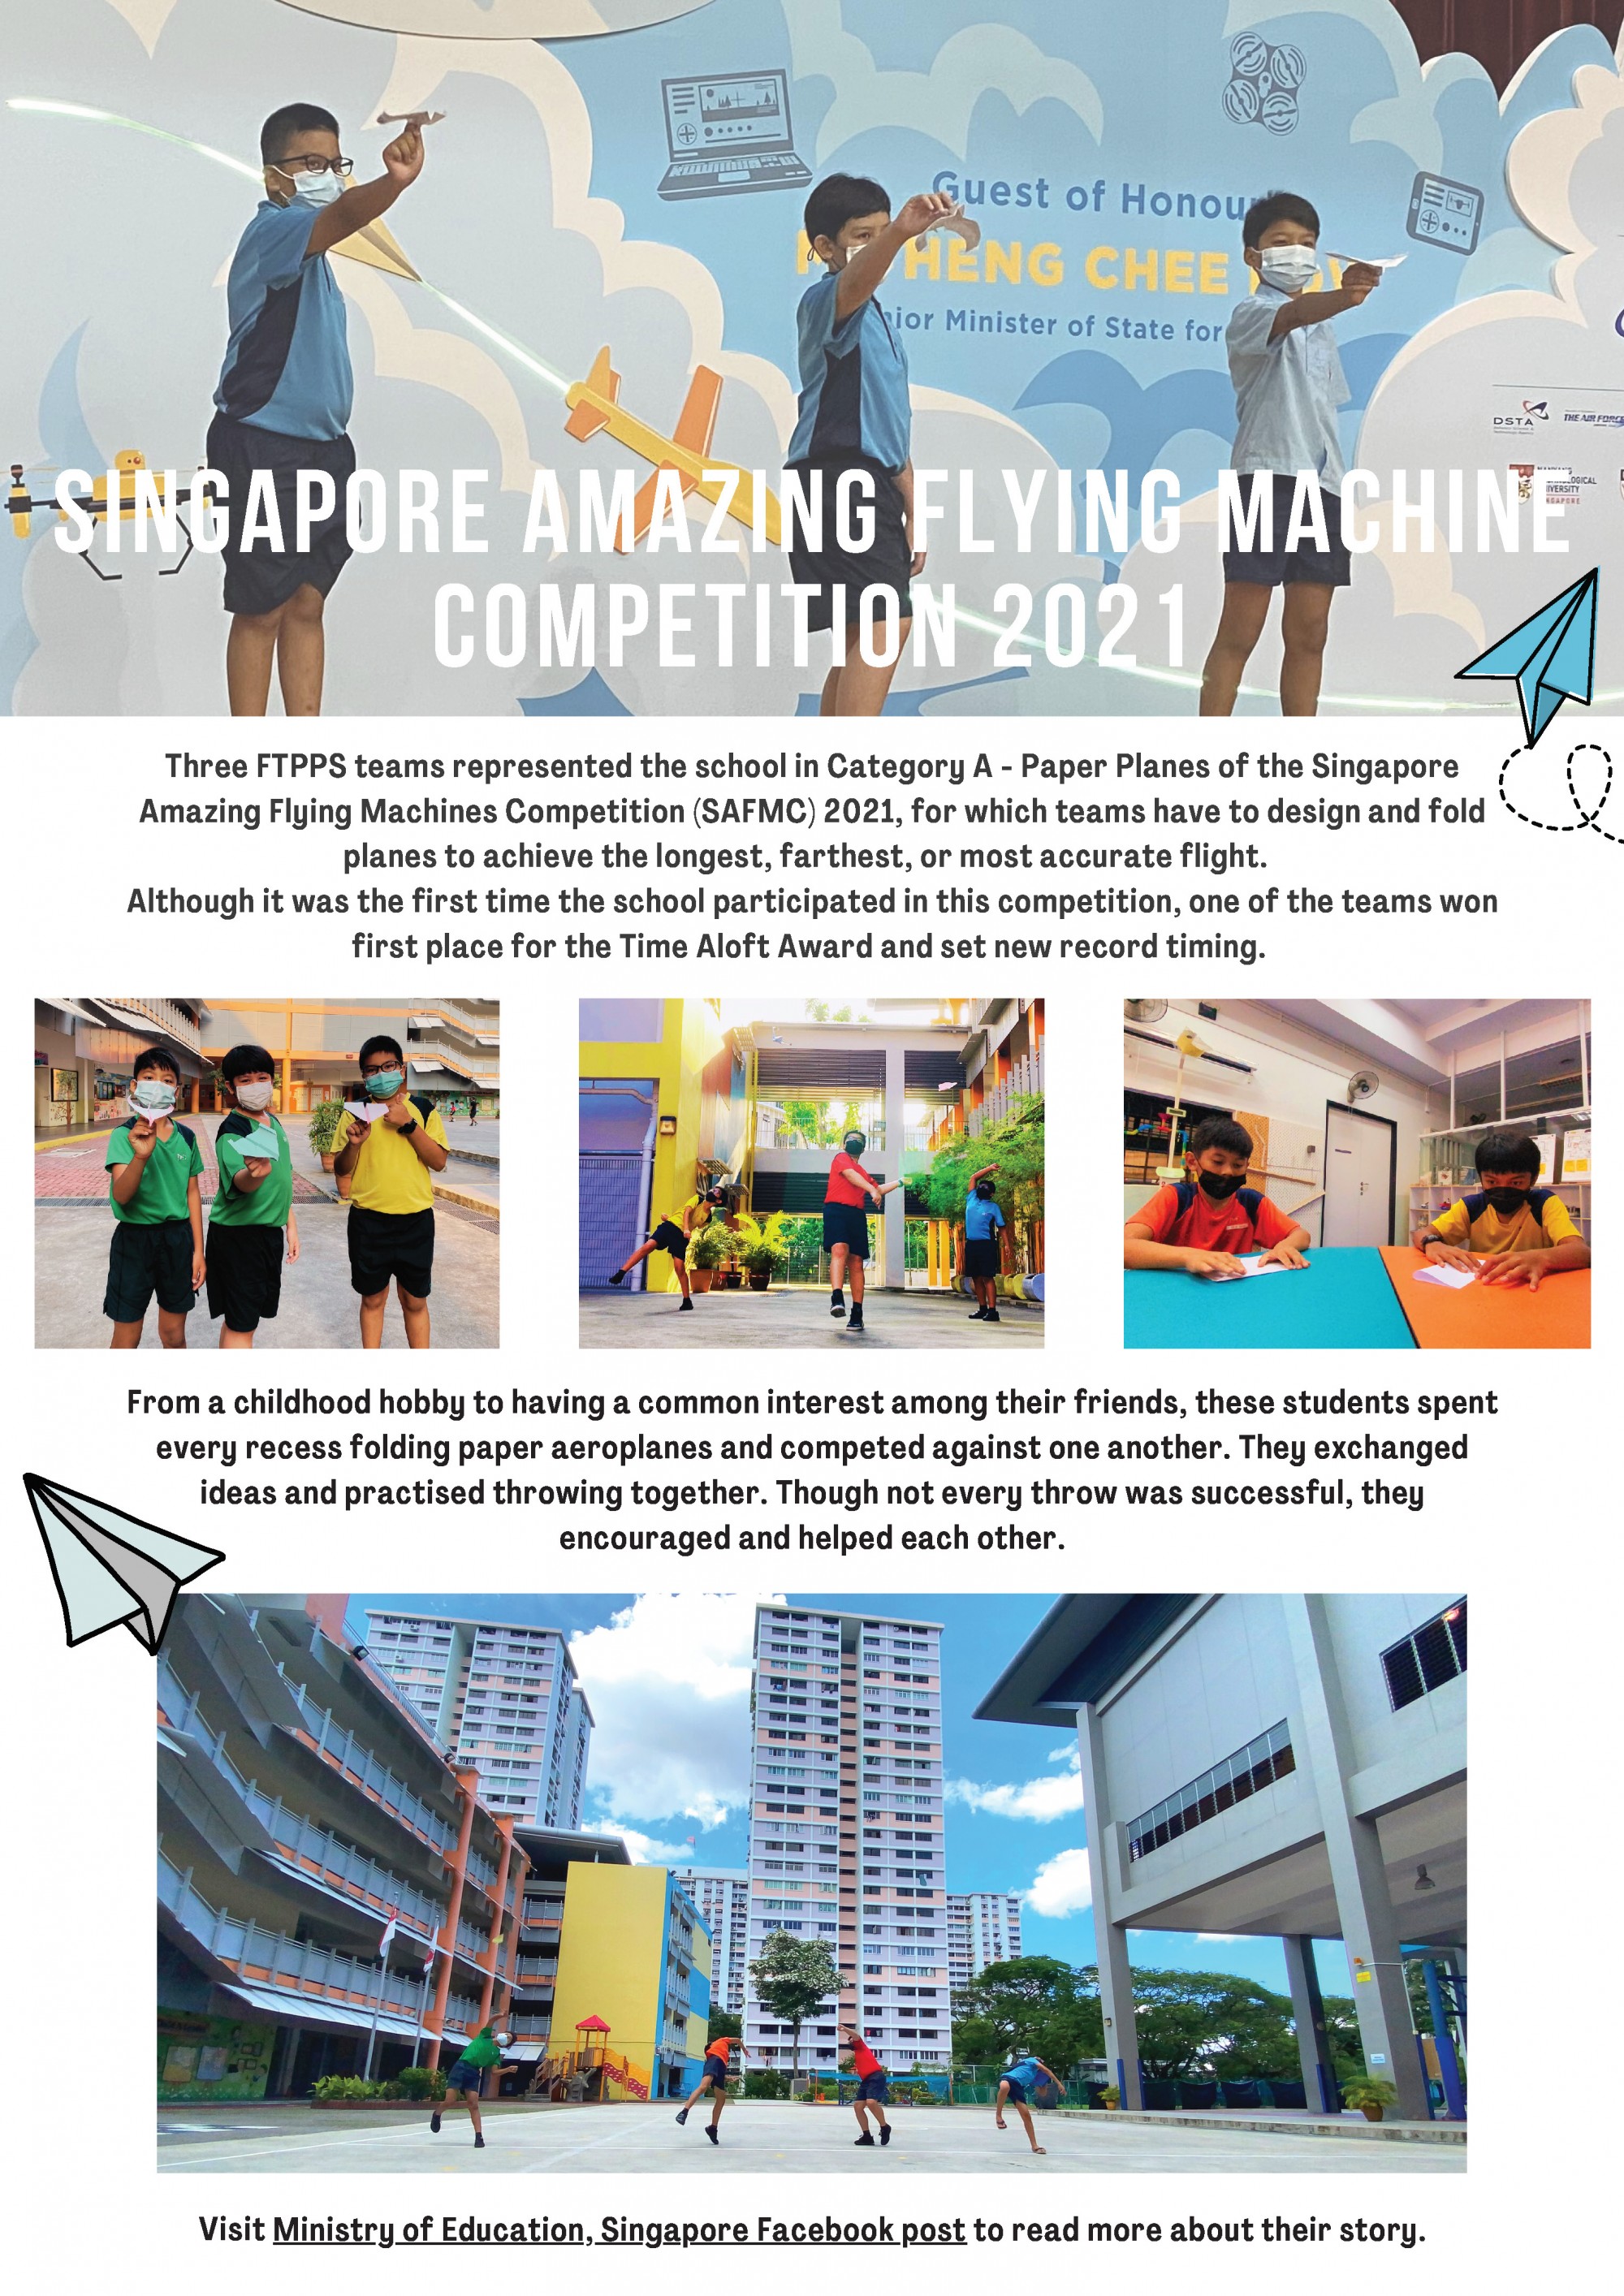 Singapore Amazing Flying Machine Competition 2021